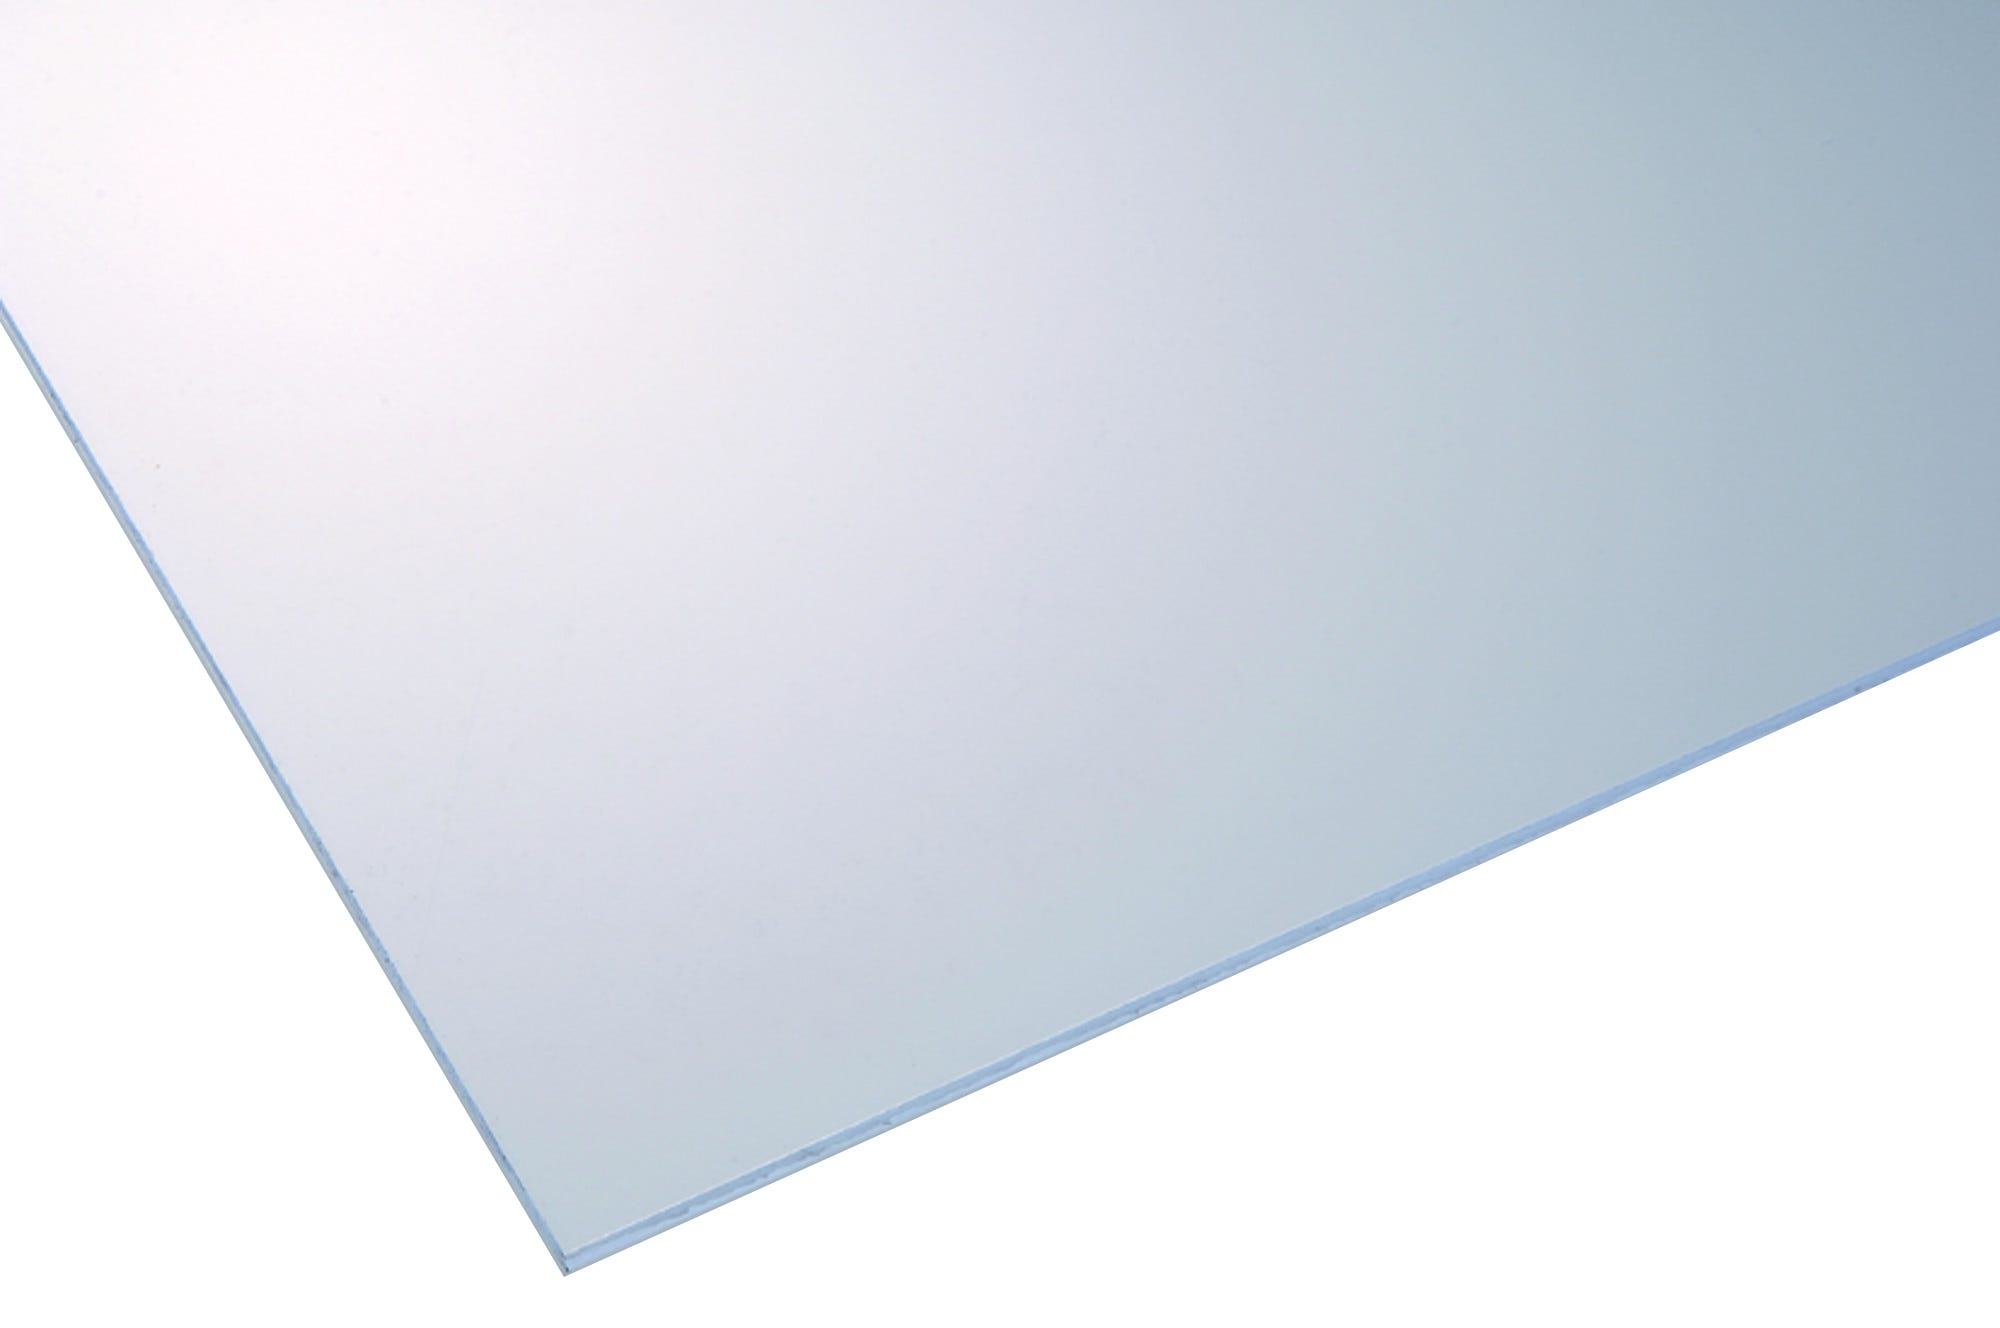 Vidrio plástico transparente liso de 2.2 mm de grosor y 100x50cm